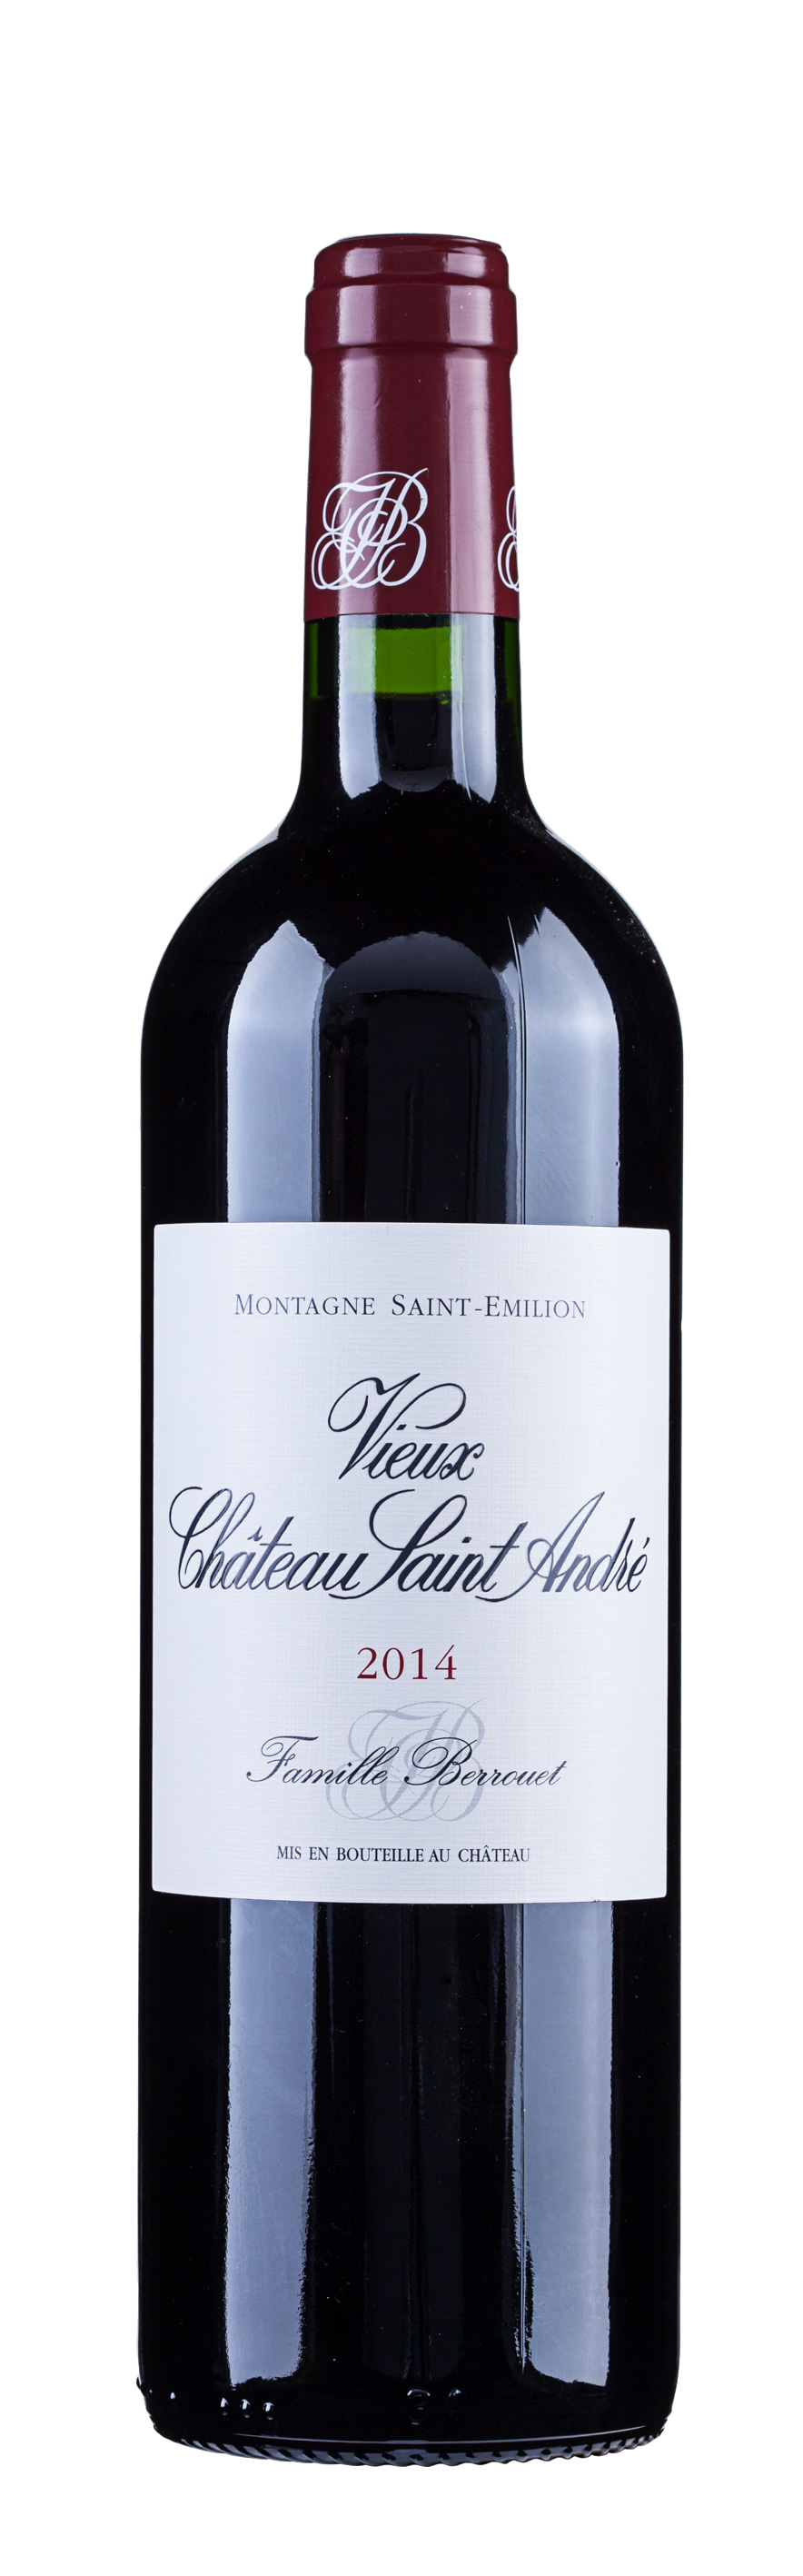 Rượu vang đỏ Pháp Vieux Chateau Saint Andre Montagne 2018